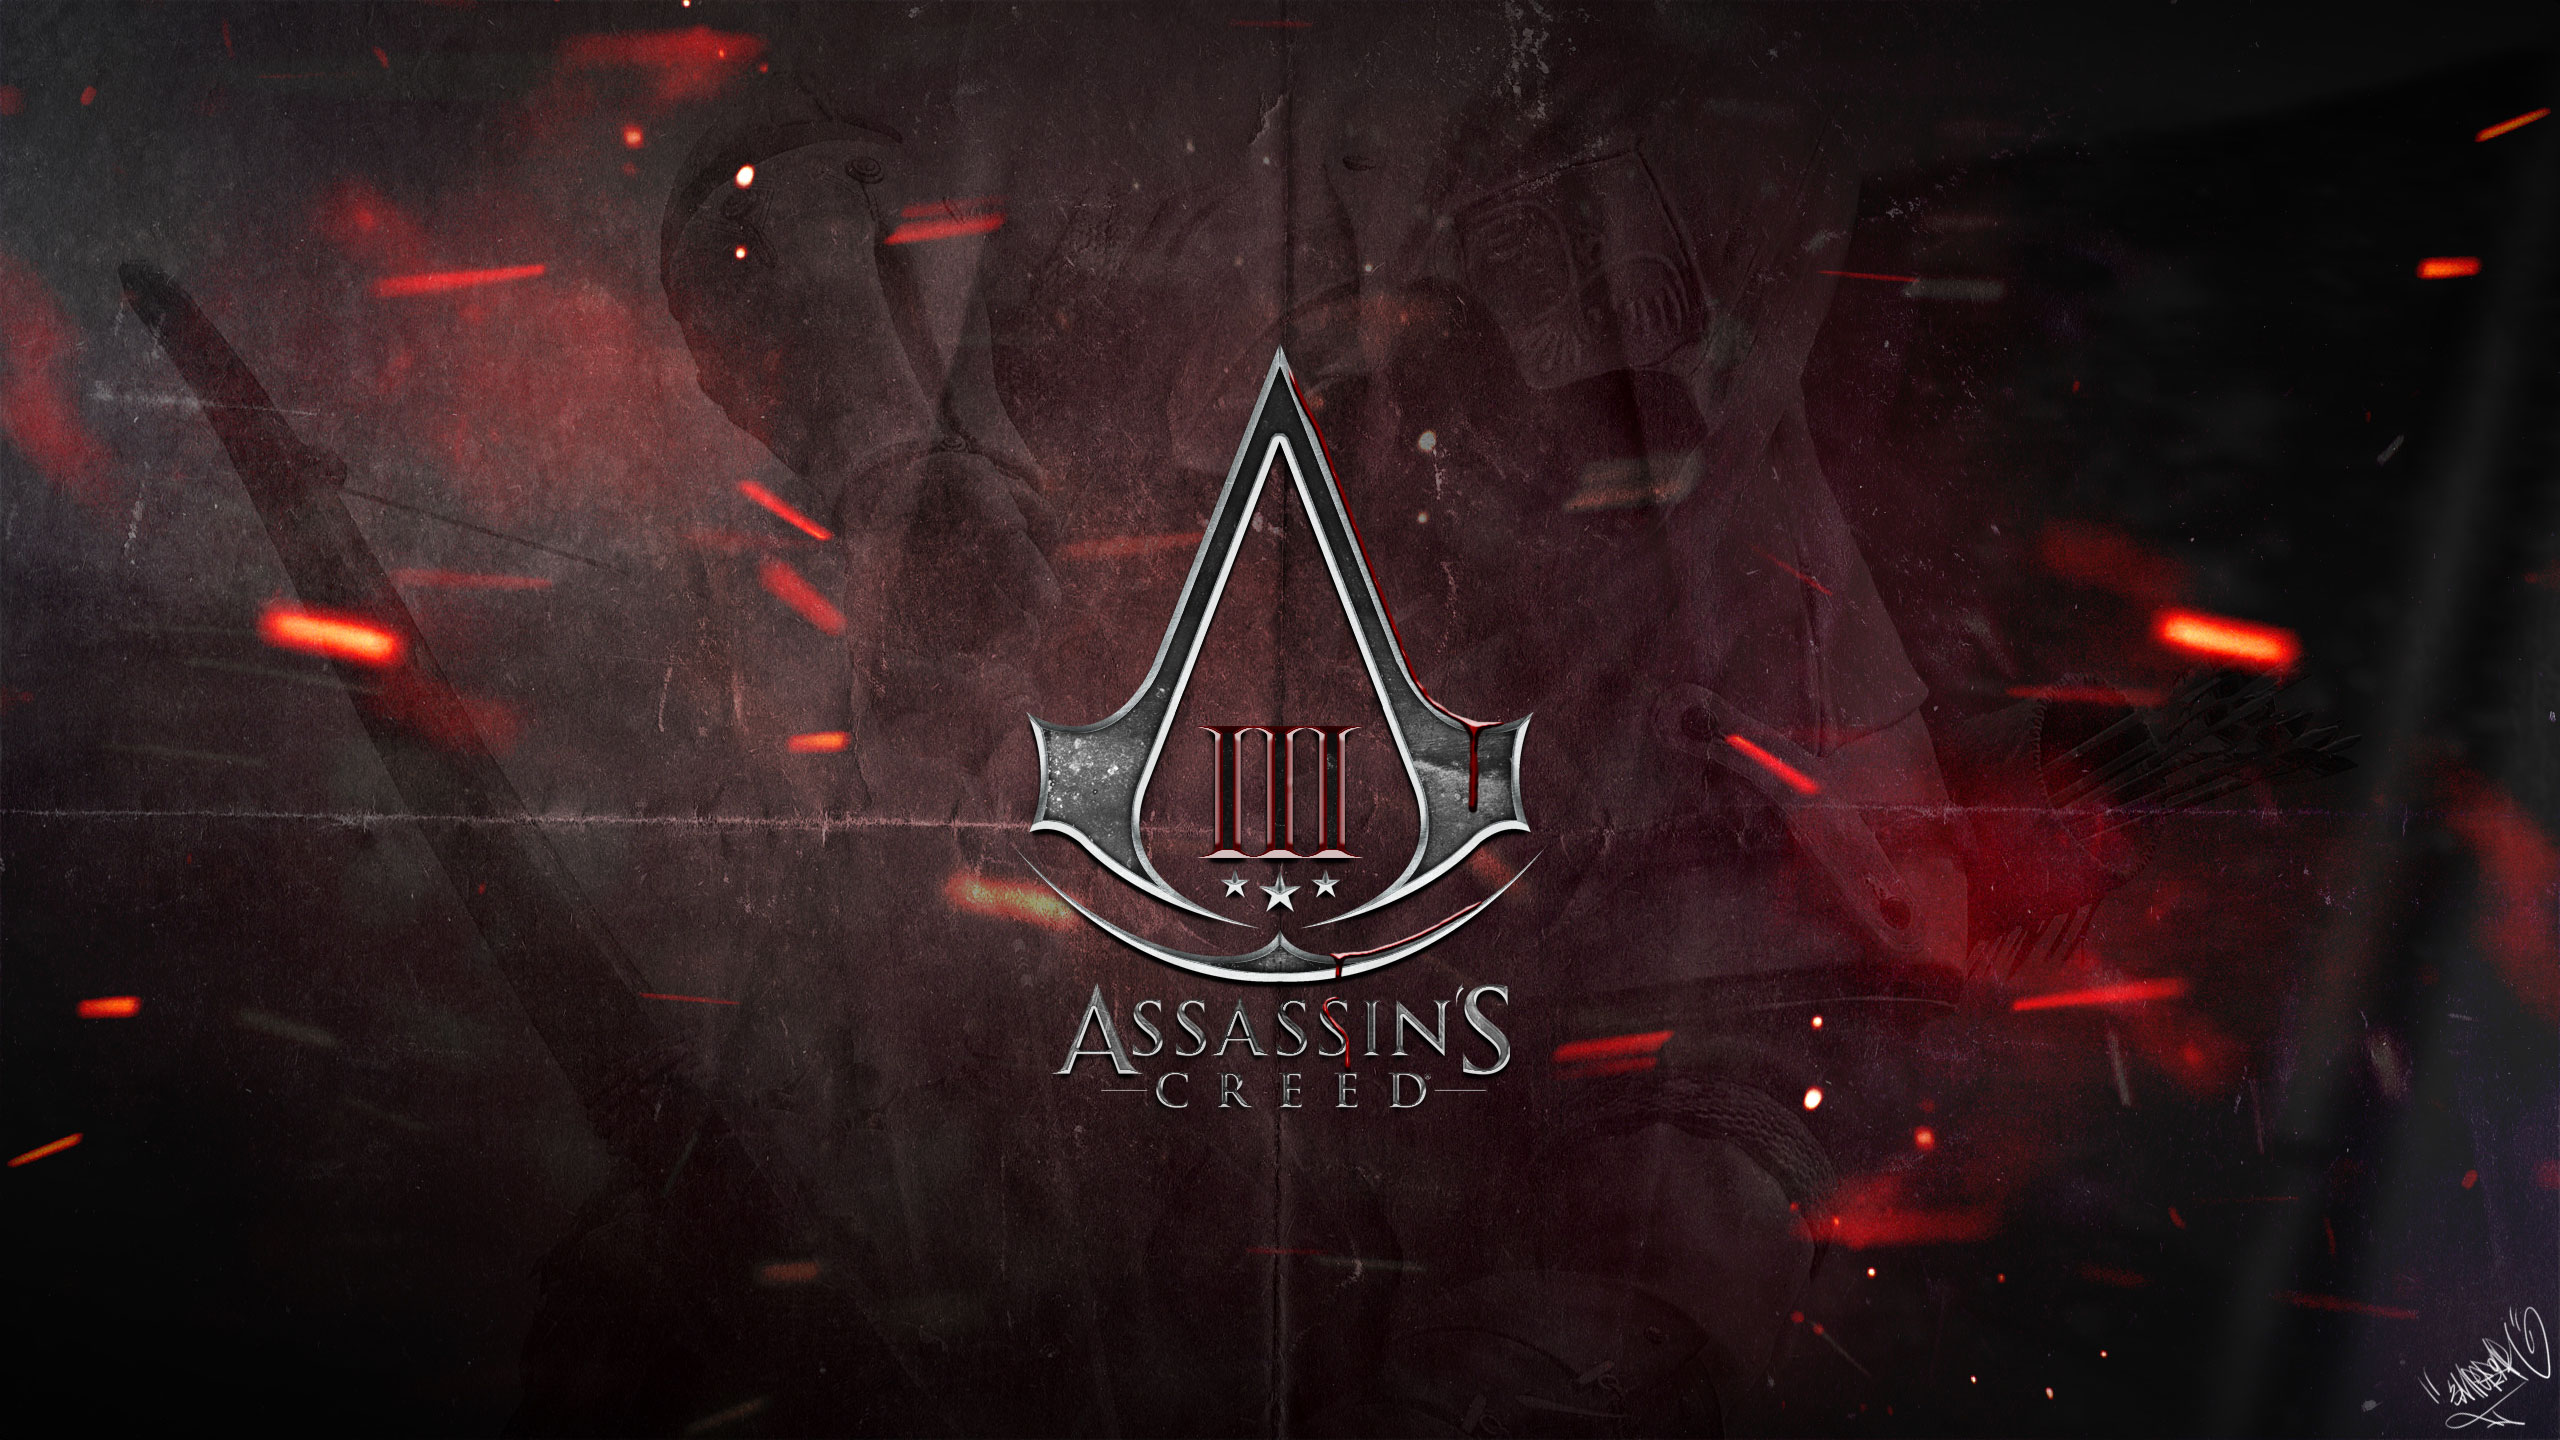 The Assassins Assassins Creed